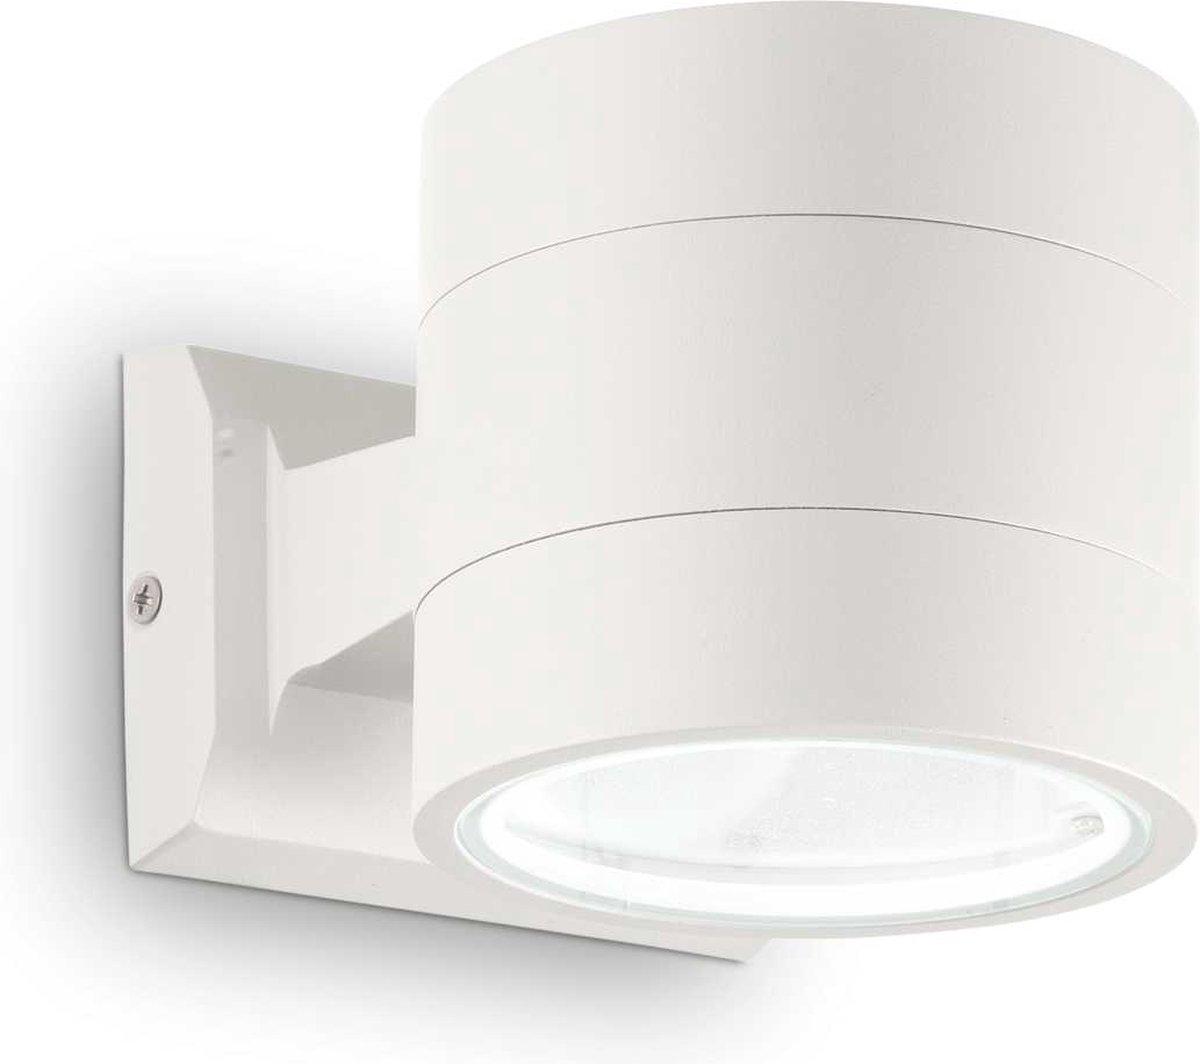 Ideal Your Lux - Wandlamp Modern - Metaal - G9 - Voor Binnen - Lamp - Lampen - Woonkamer - Eetkamer - Slaapkamer - Wit